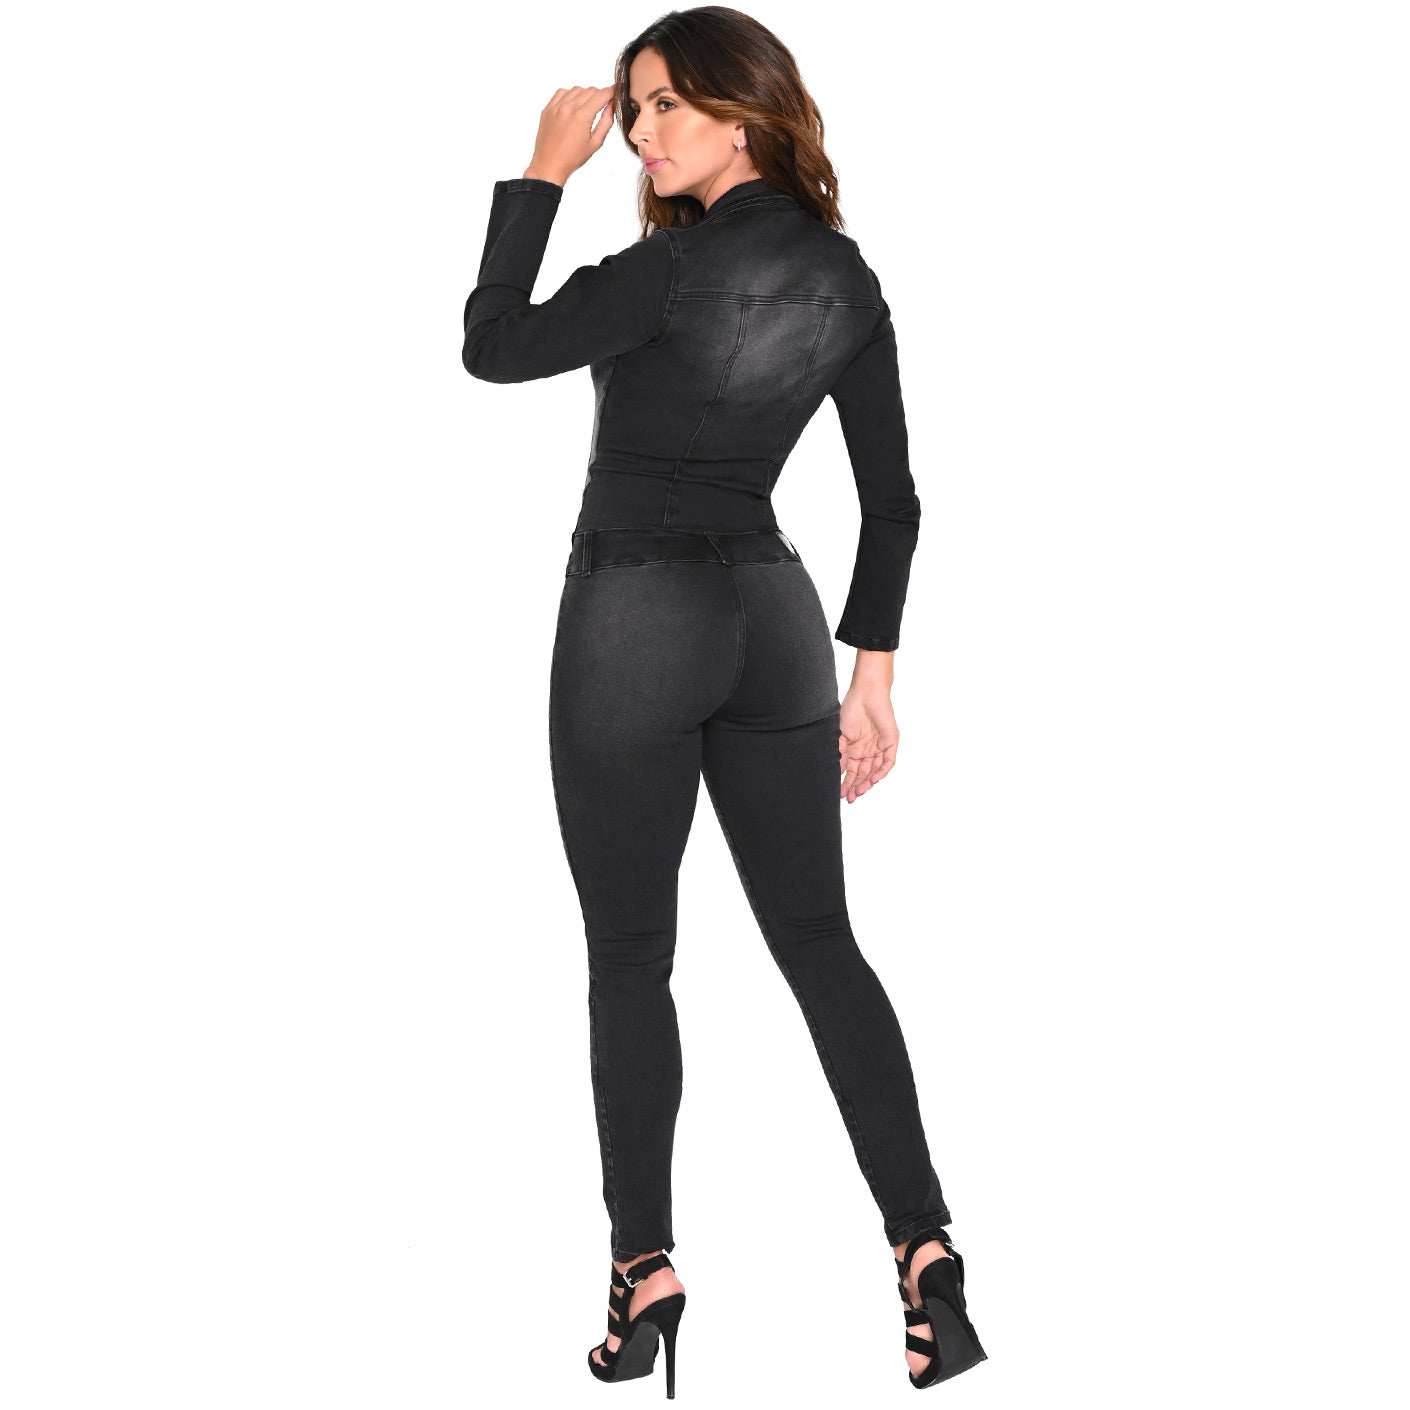 Lowla EN262036 - Long Sleeve Denim Jumpsuit for Women